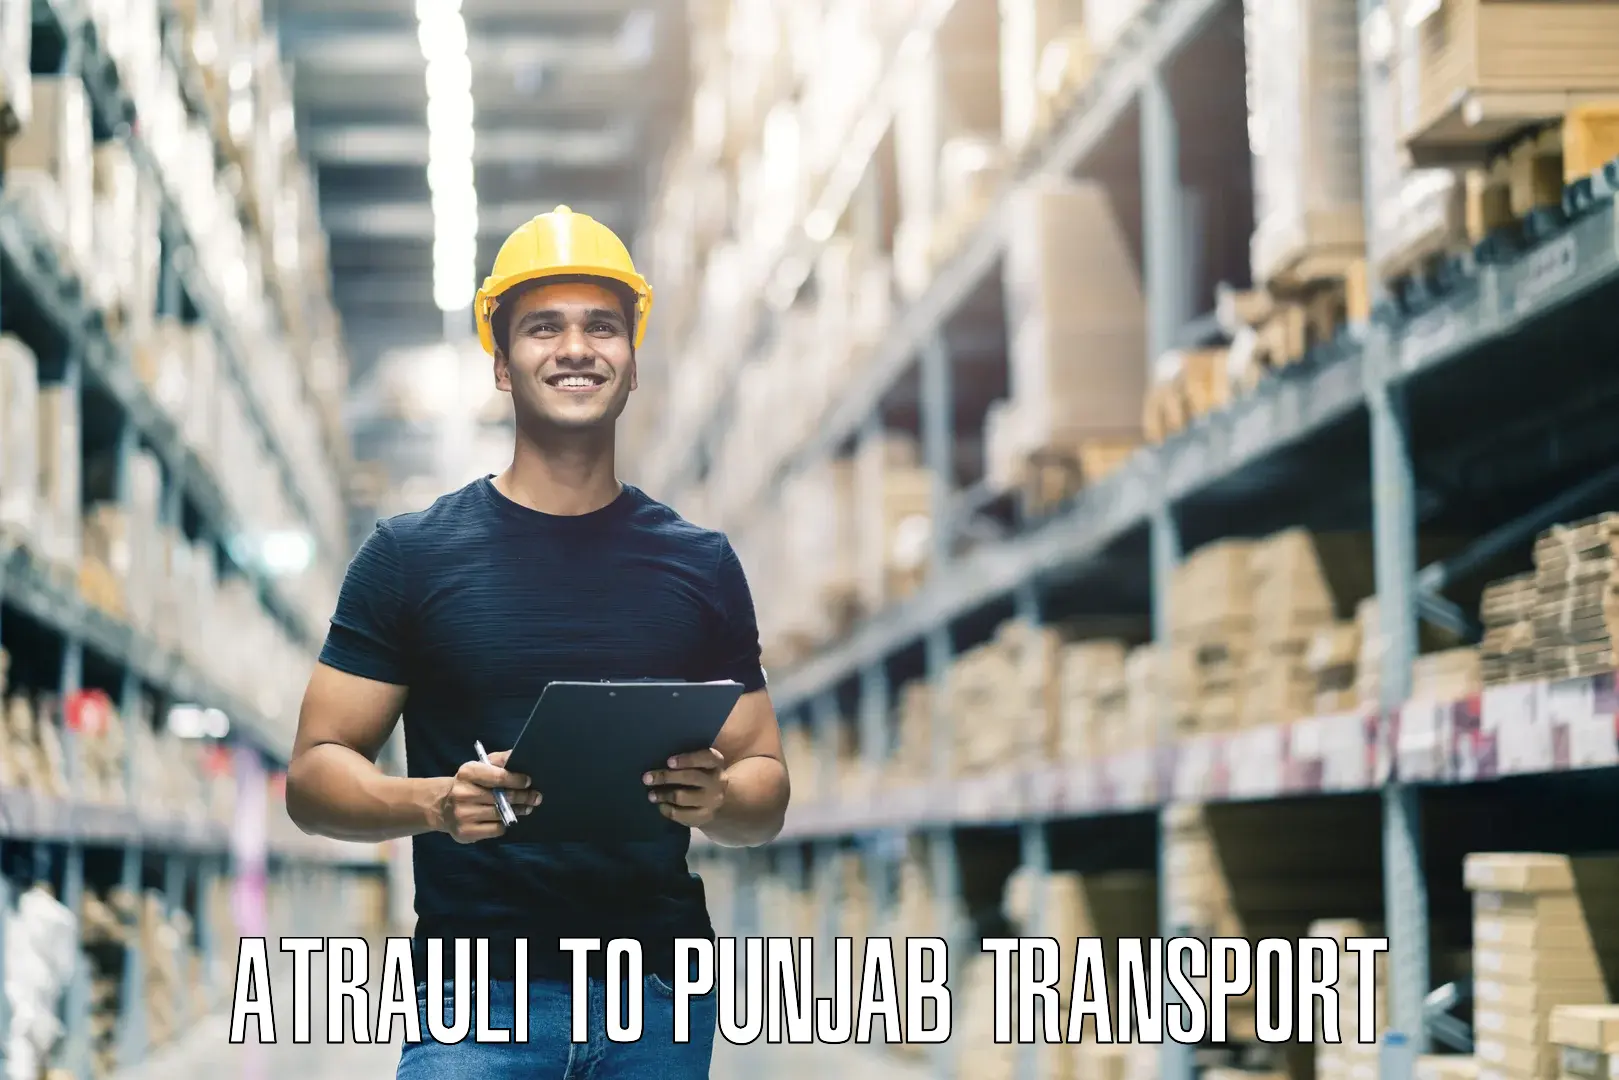 Transport in sharing Atrauli to Punjab